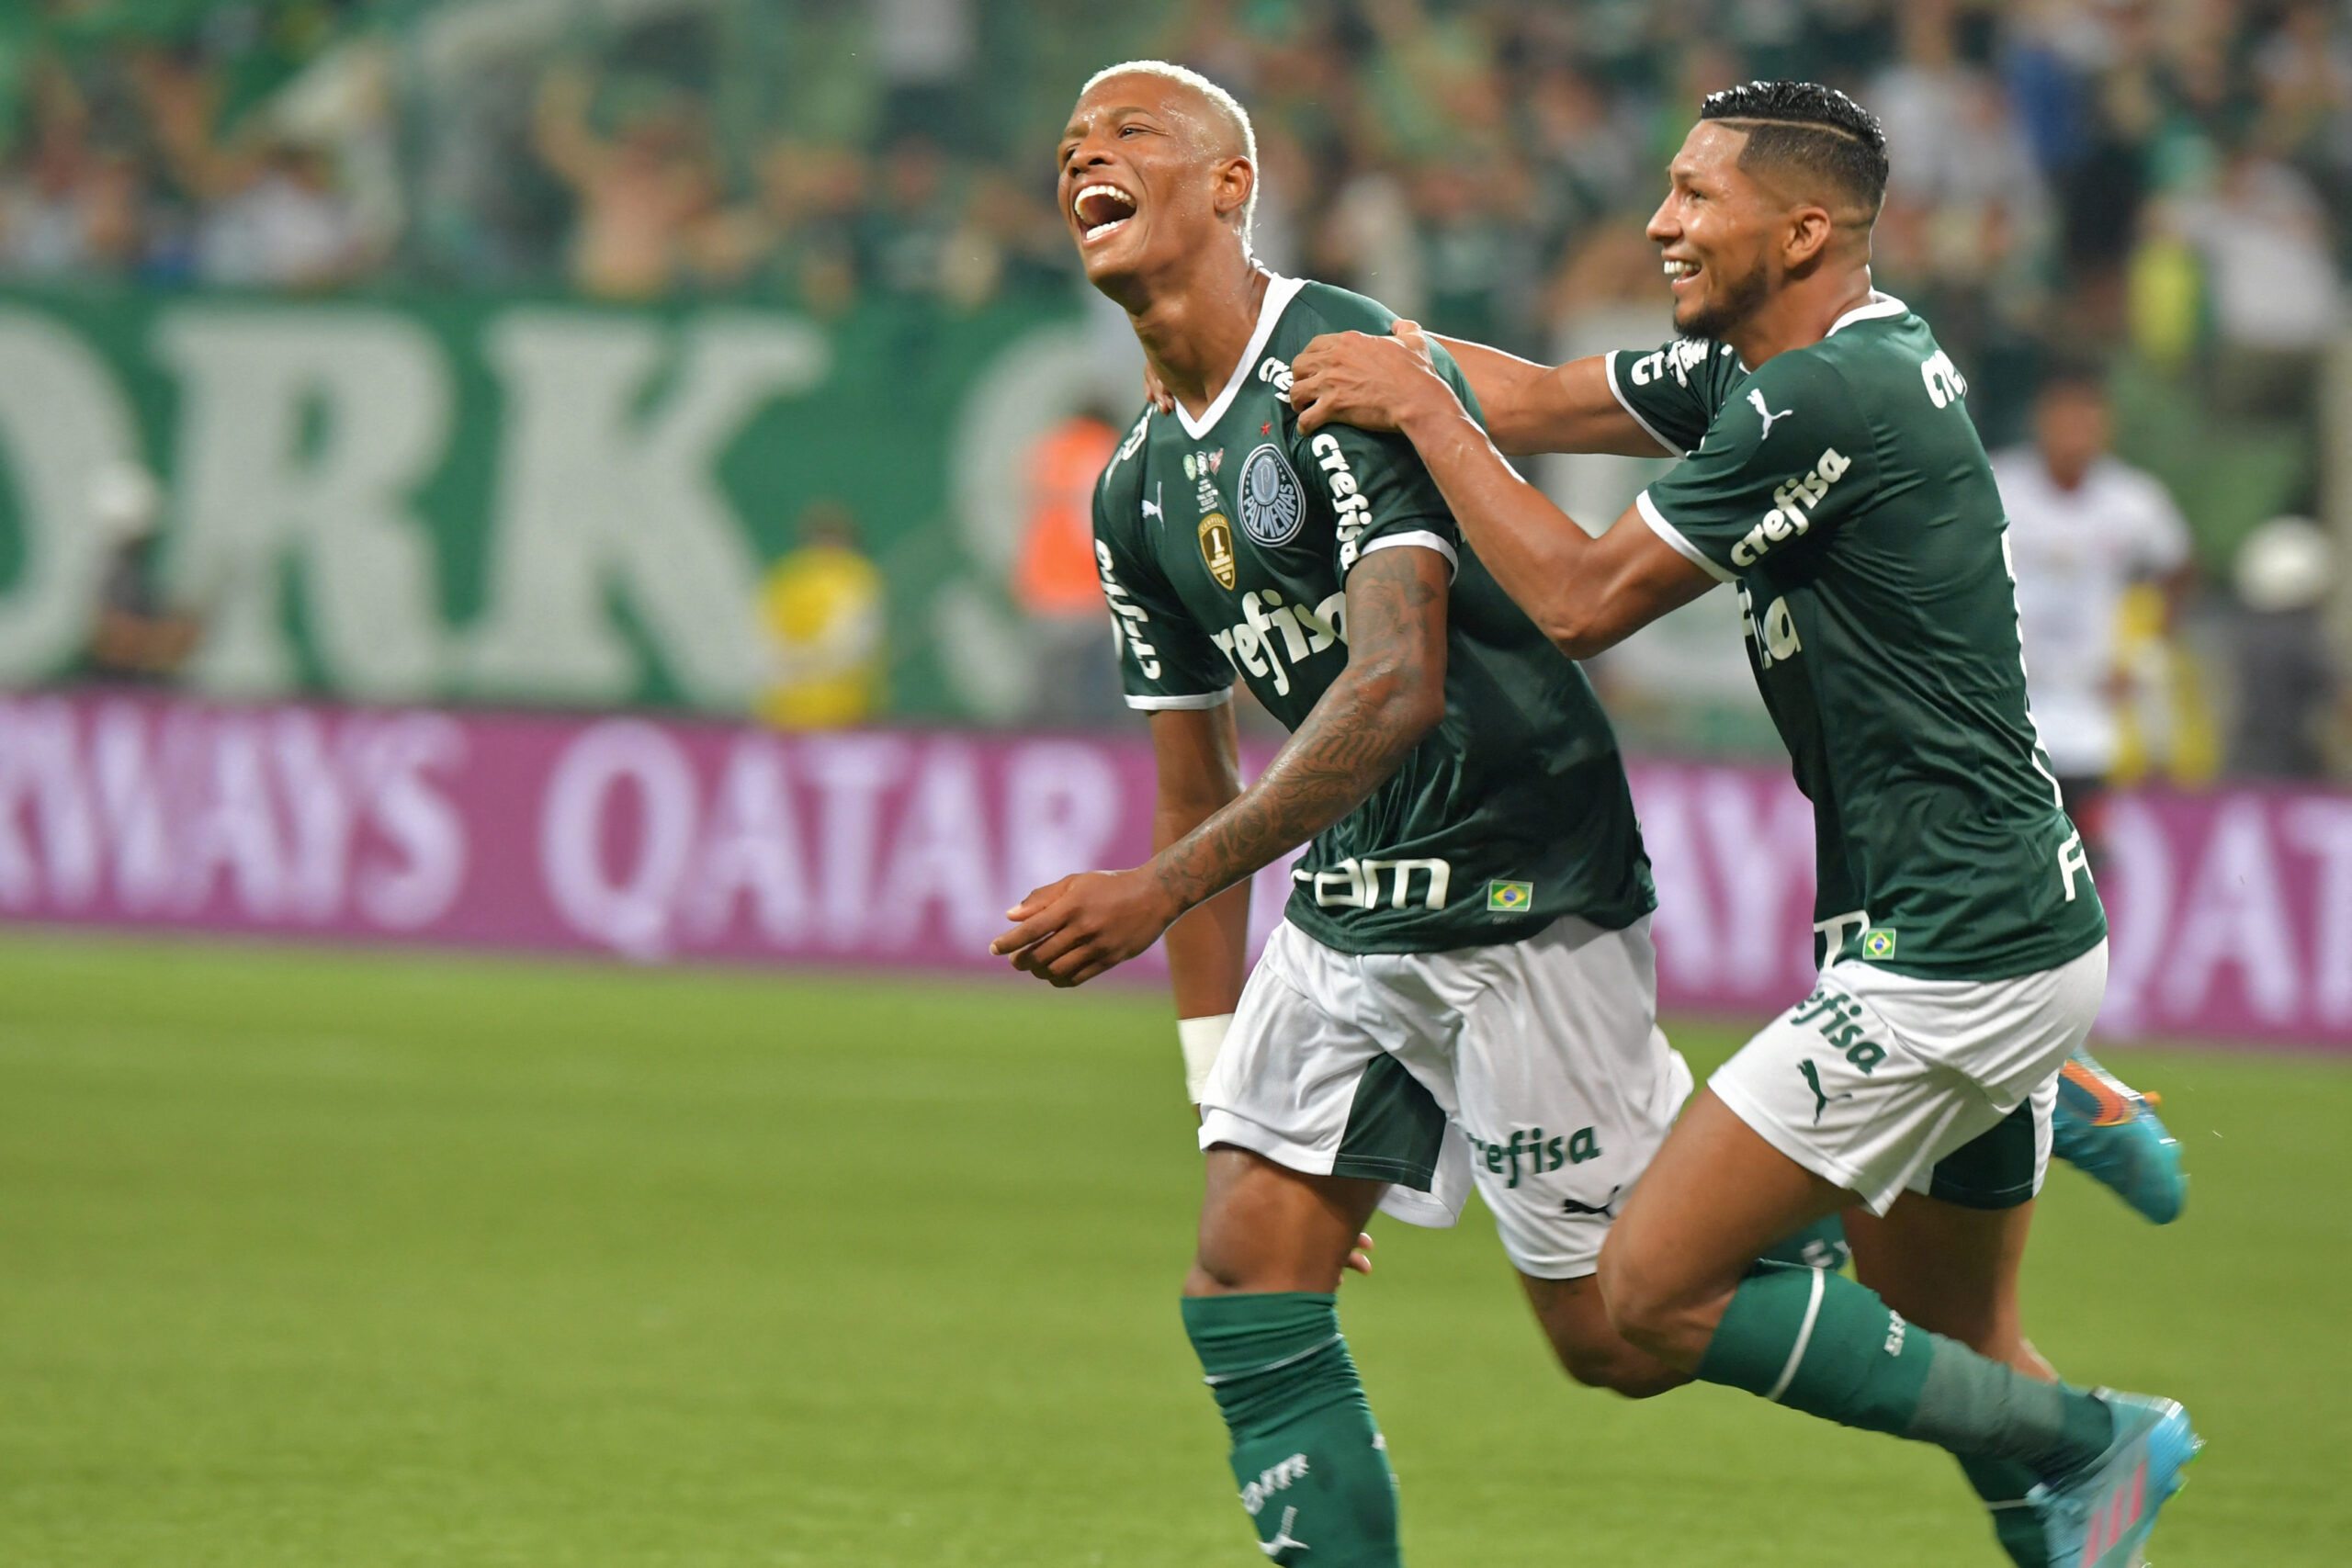 Saiba quanto o Palmeiras ganhou pela conquista da Recopa Sul-Americana